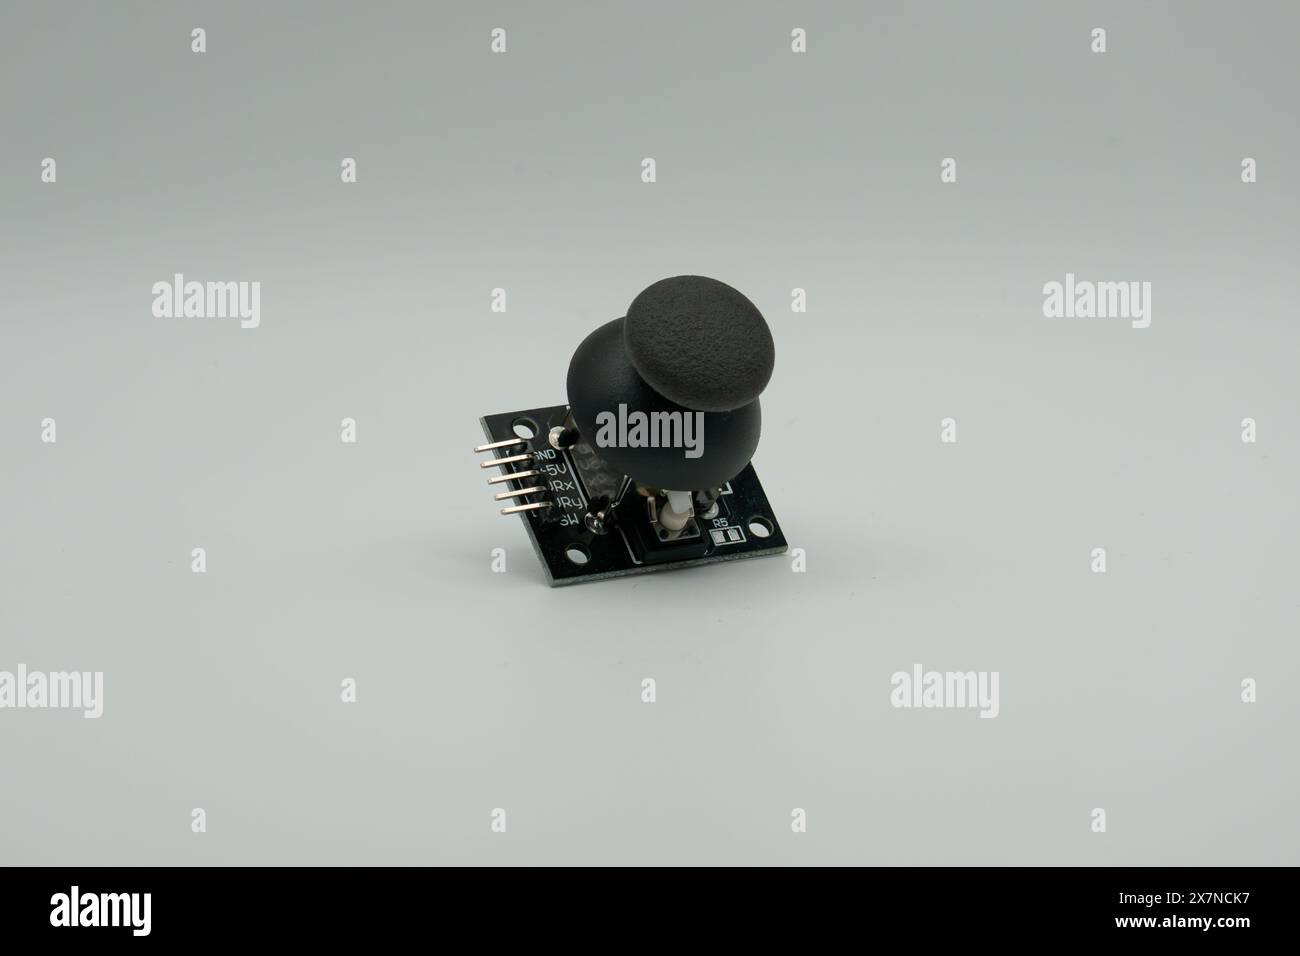 Joystick-Modul für arduino auf weißer Oberfläche Stockfoto